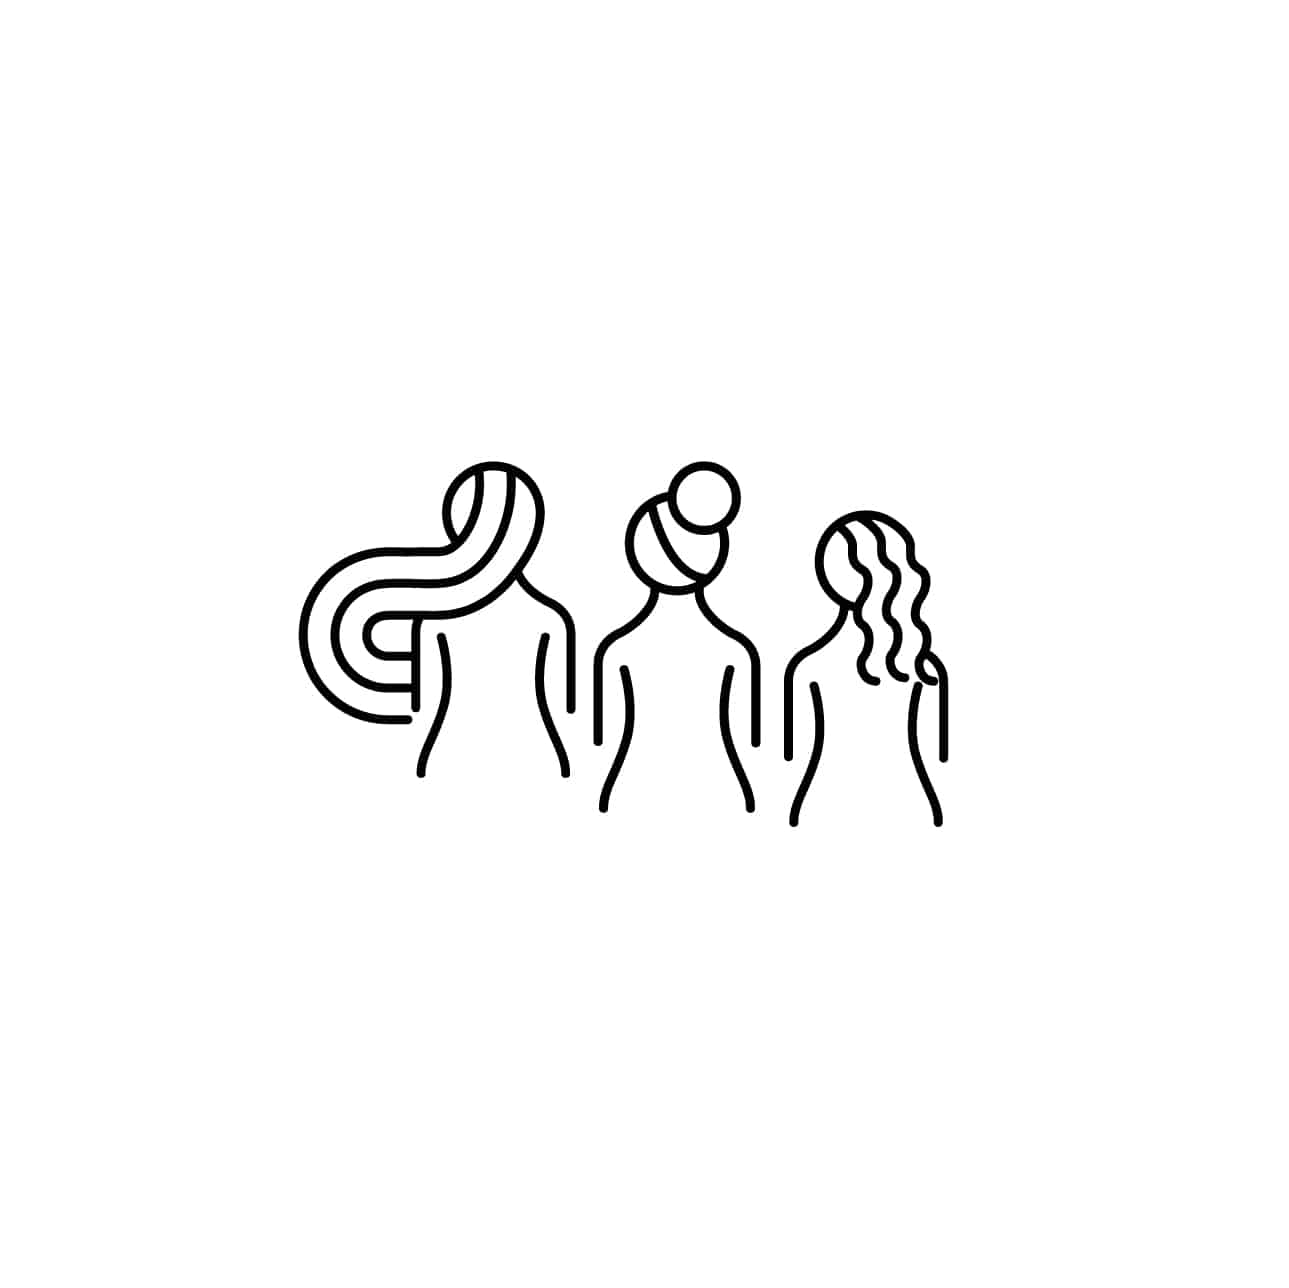 Stellen_Design_Graphic_Design_Logo_Design_2-02